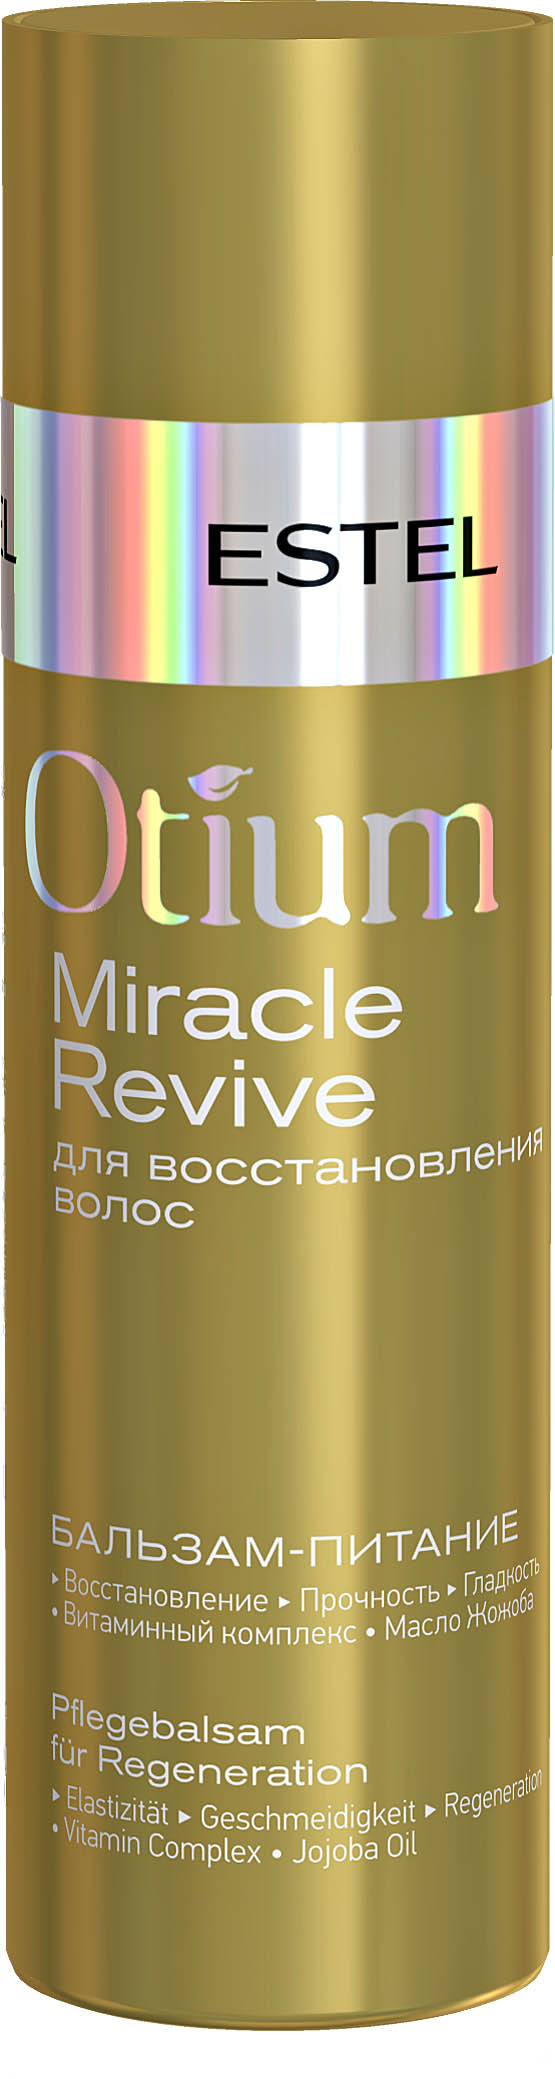 Бальзам-питание для восстановления волос OTIUM MIRACLE REVIVE, 200 мл